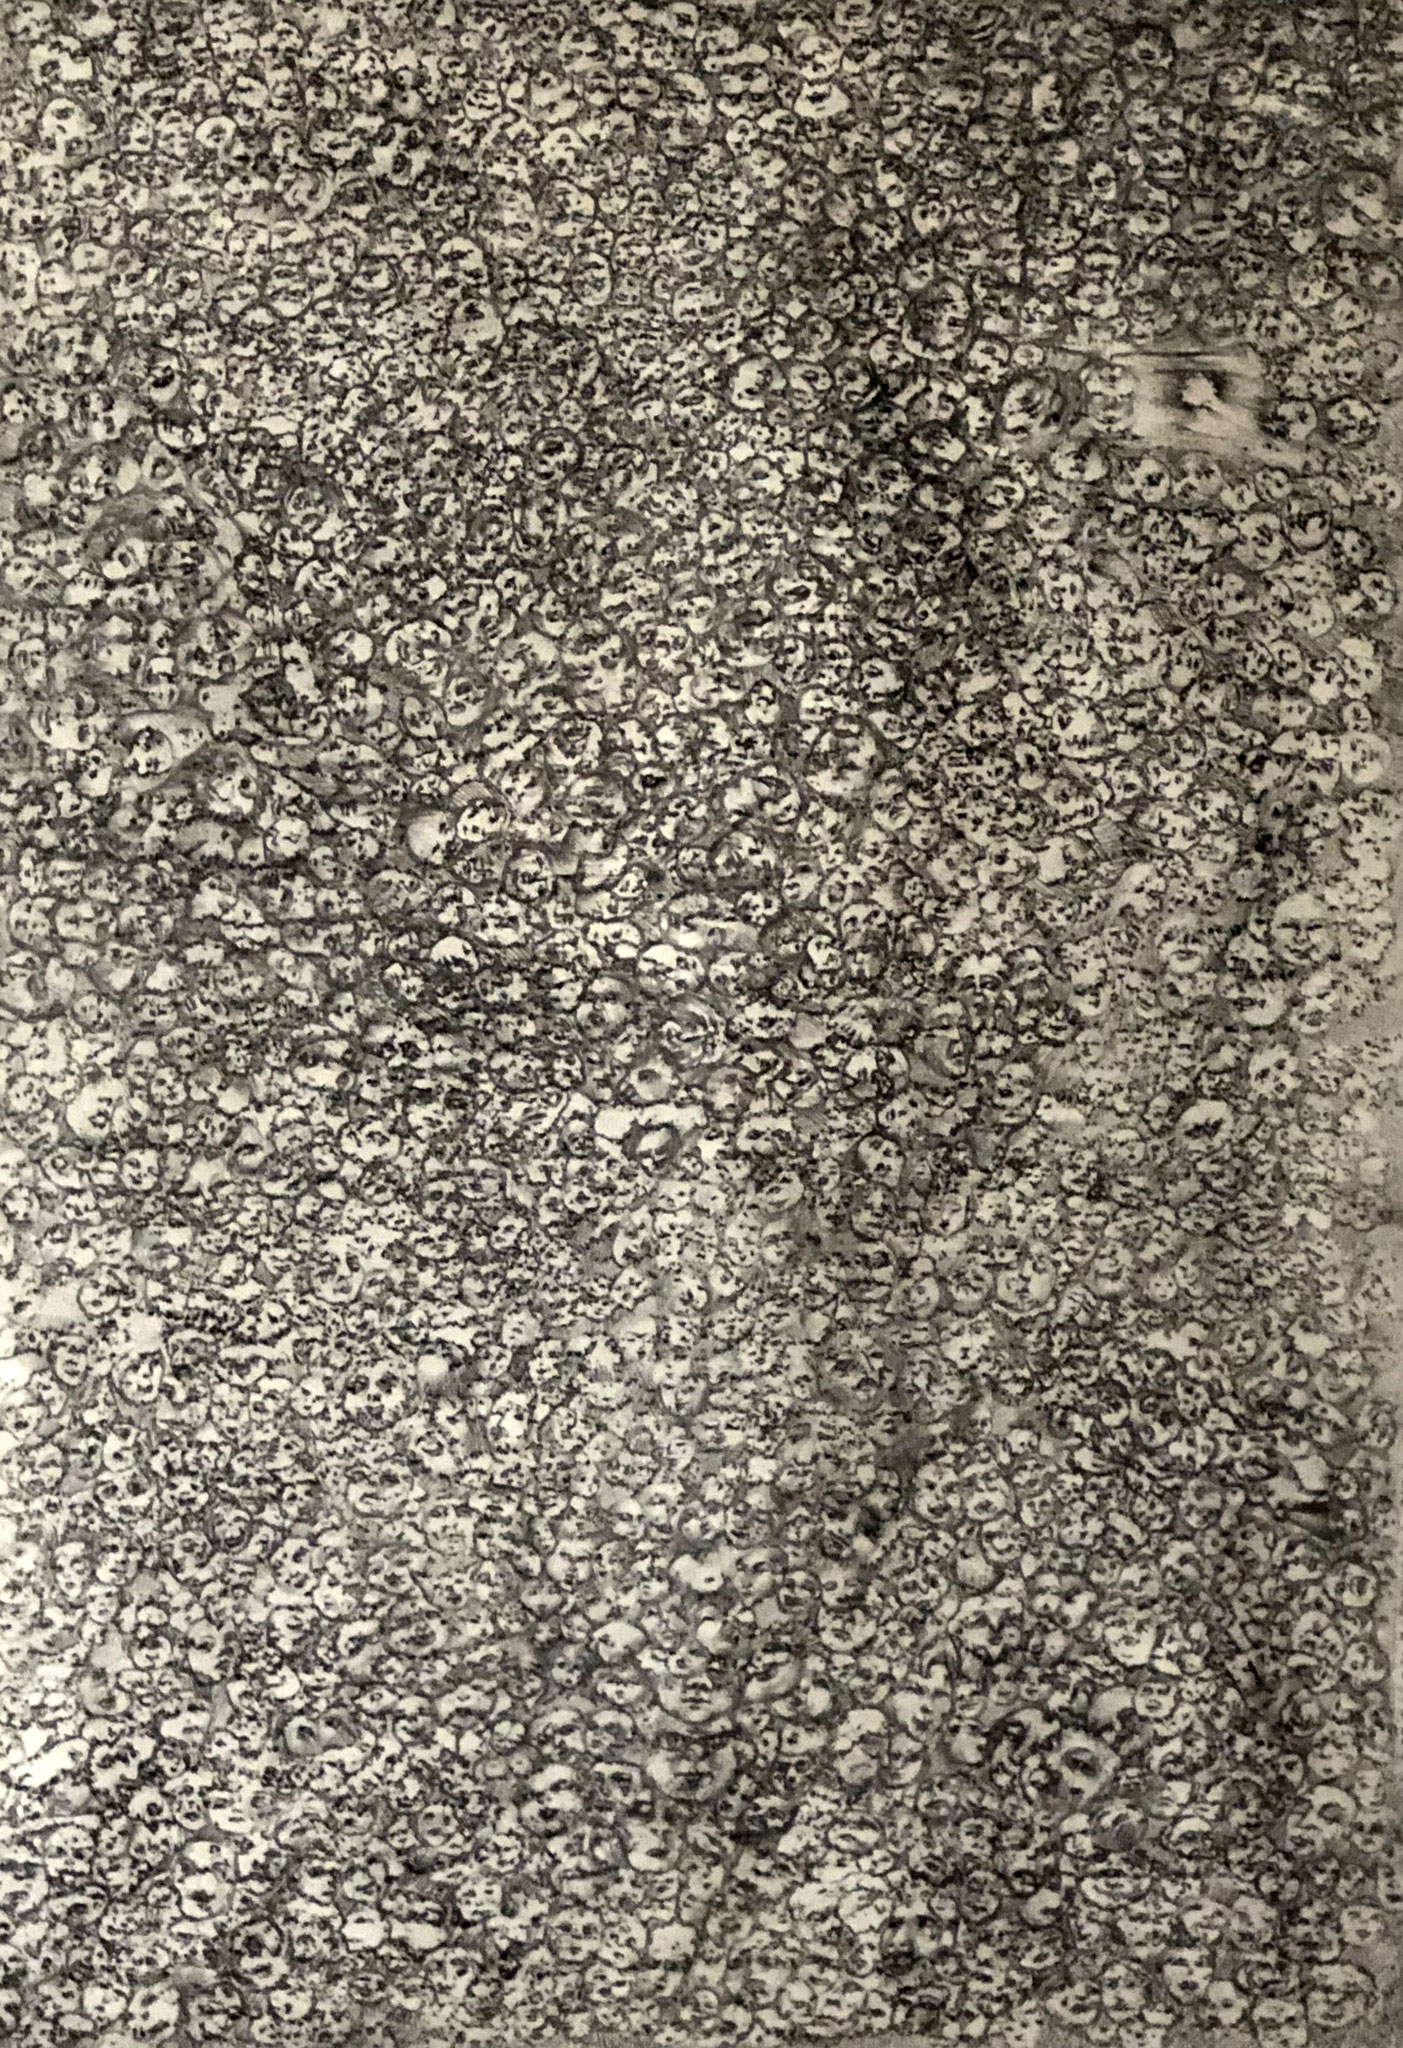 PARIS-VILLERVILLE     Graphit und Ölkreide auf Papier - 65 x 46 cm